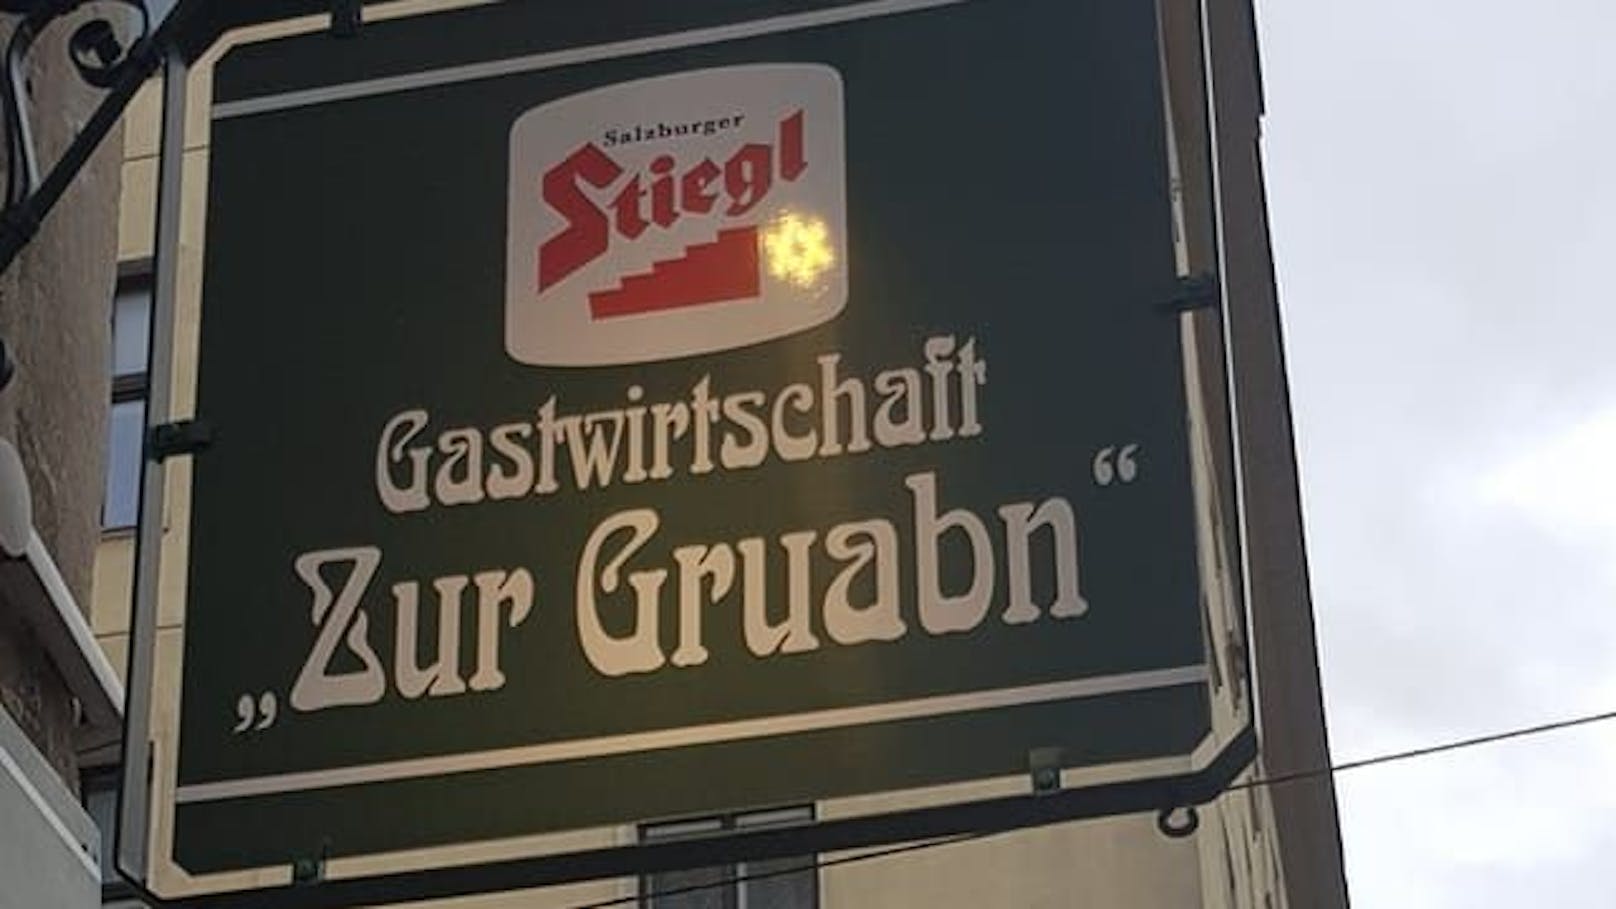 Gefolgt von der Gastwirtschaft "Zur Gruabn" in der Viaduktgasse 41, 1030 Wien.